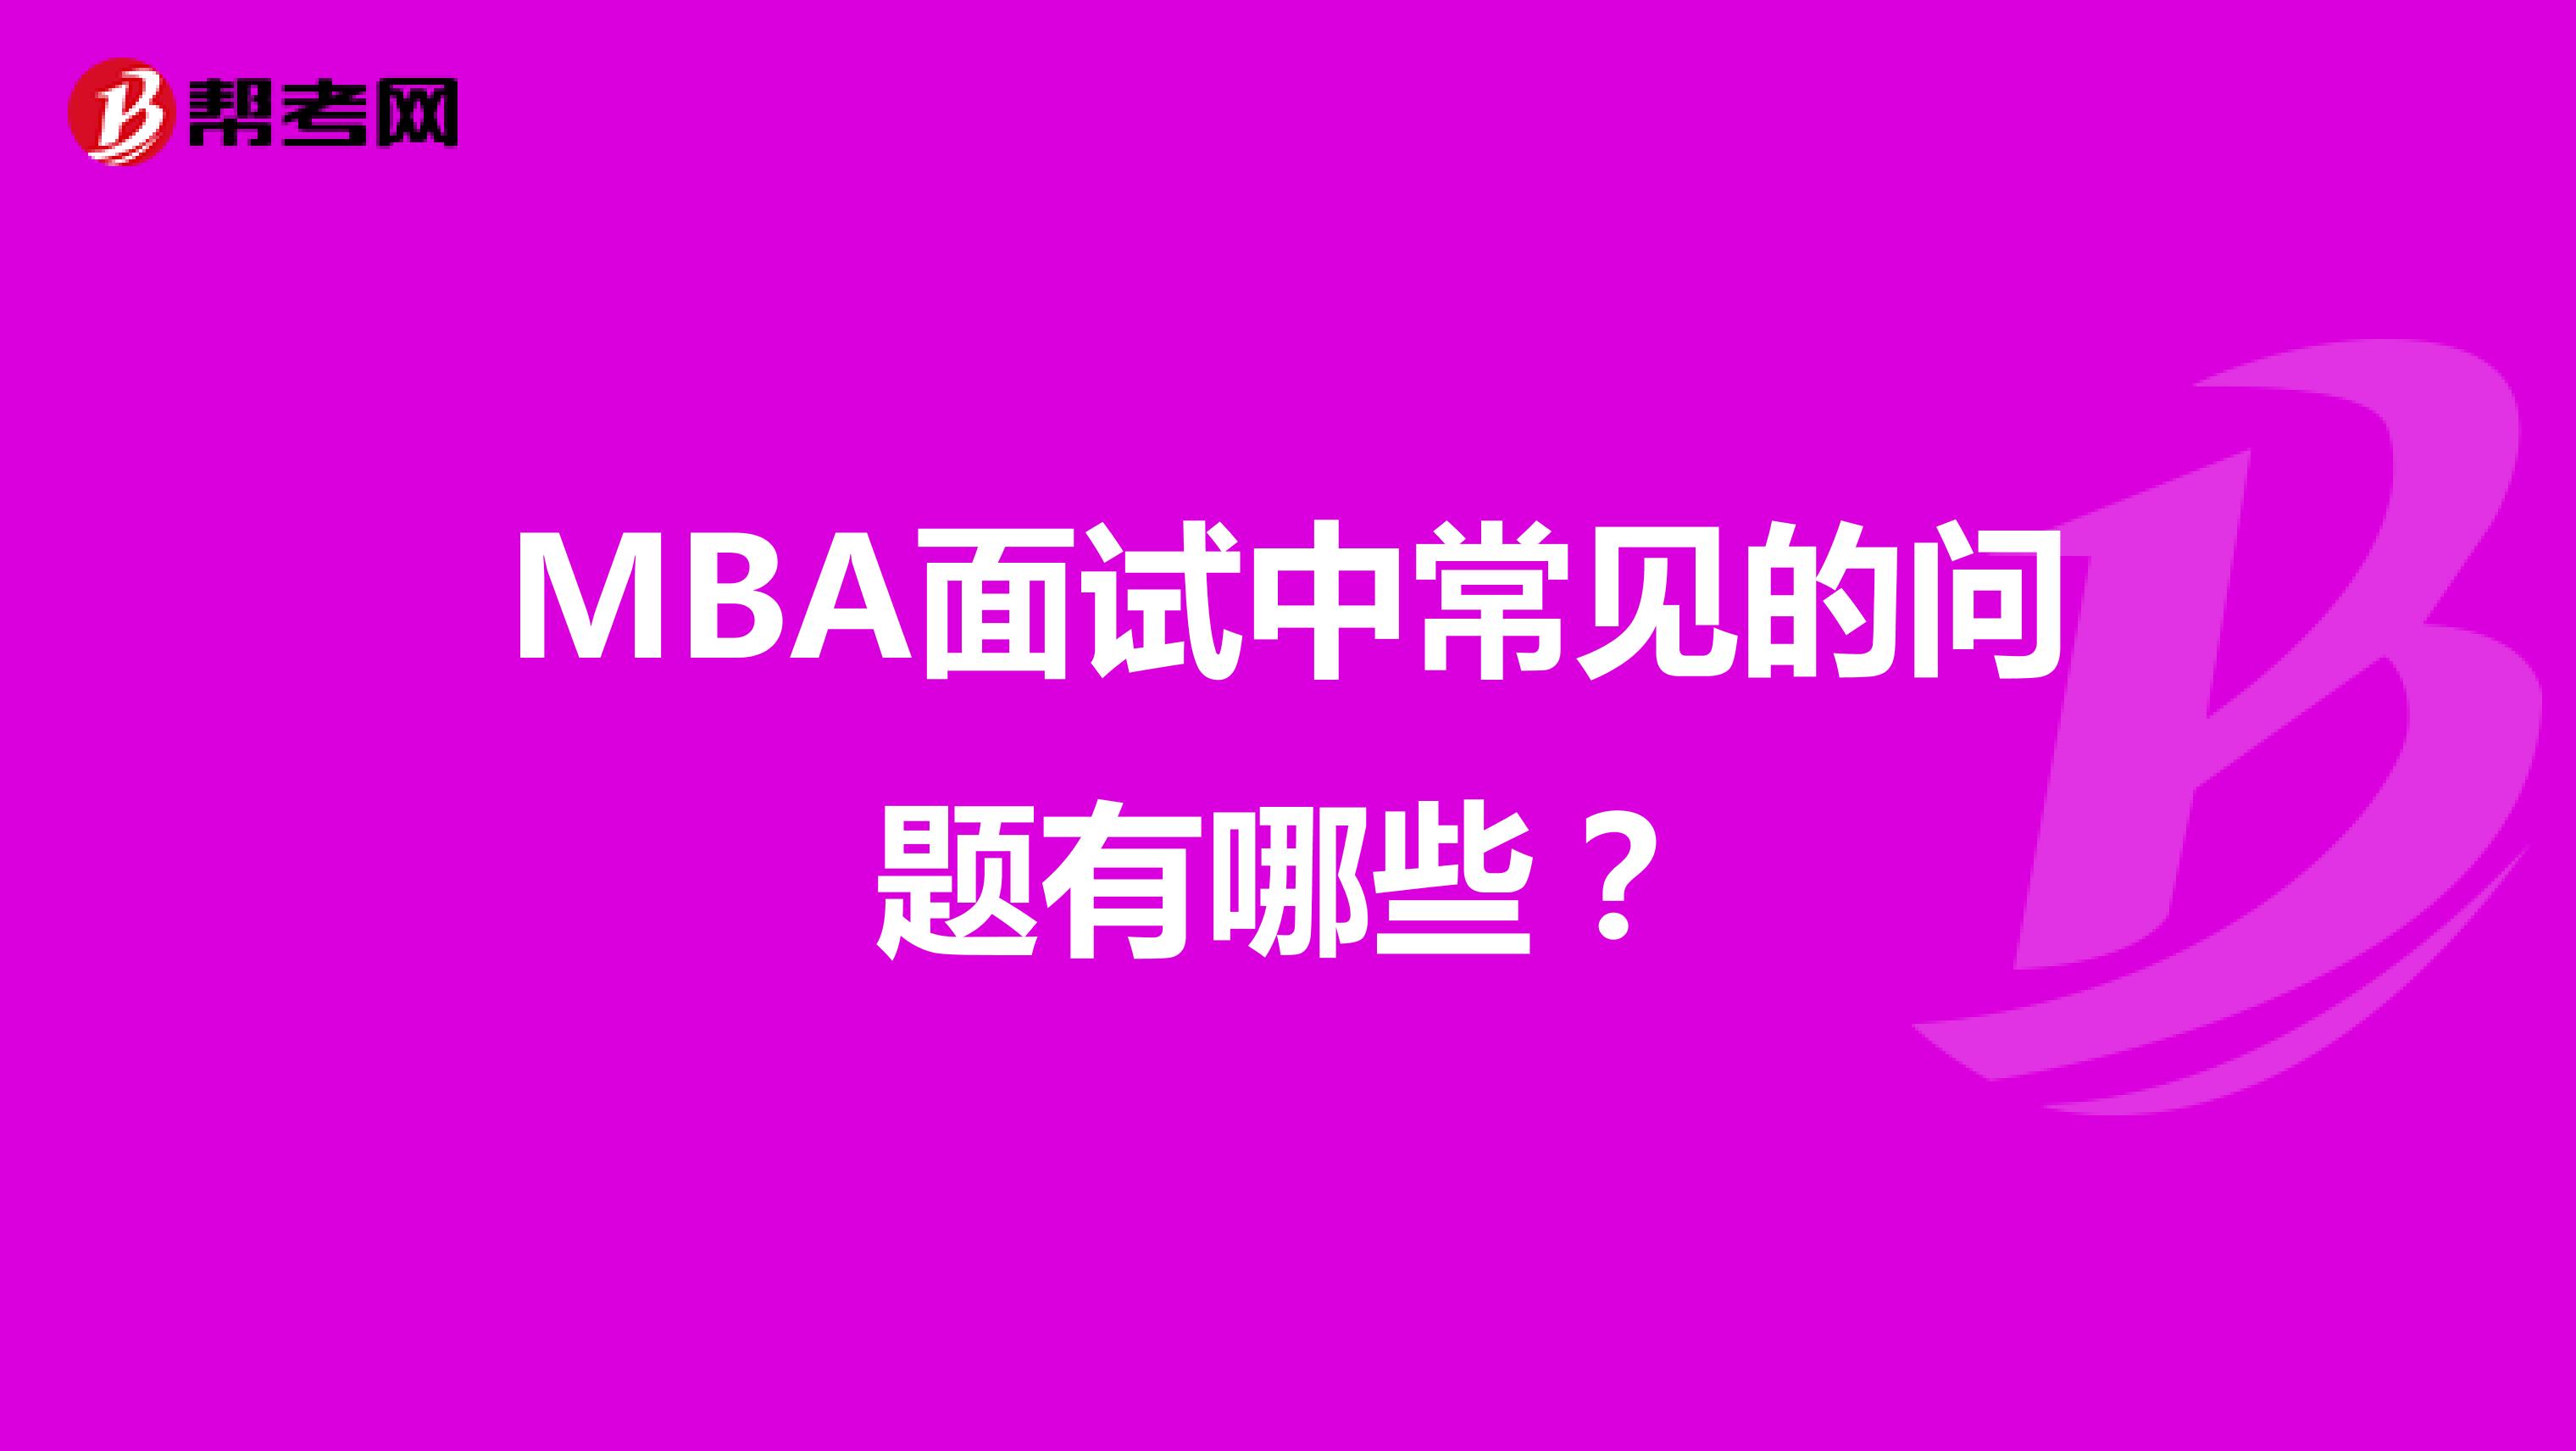 MBA面试中常见的问题有哪些？